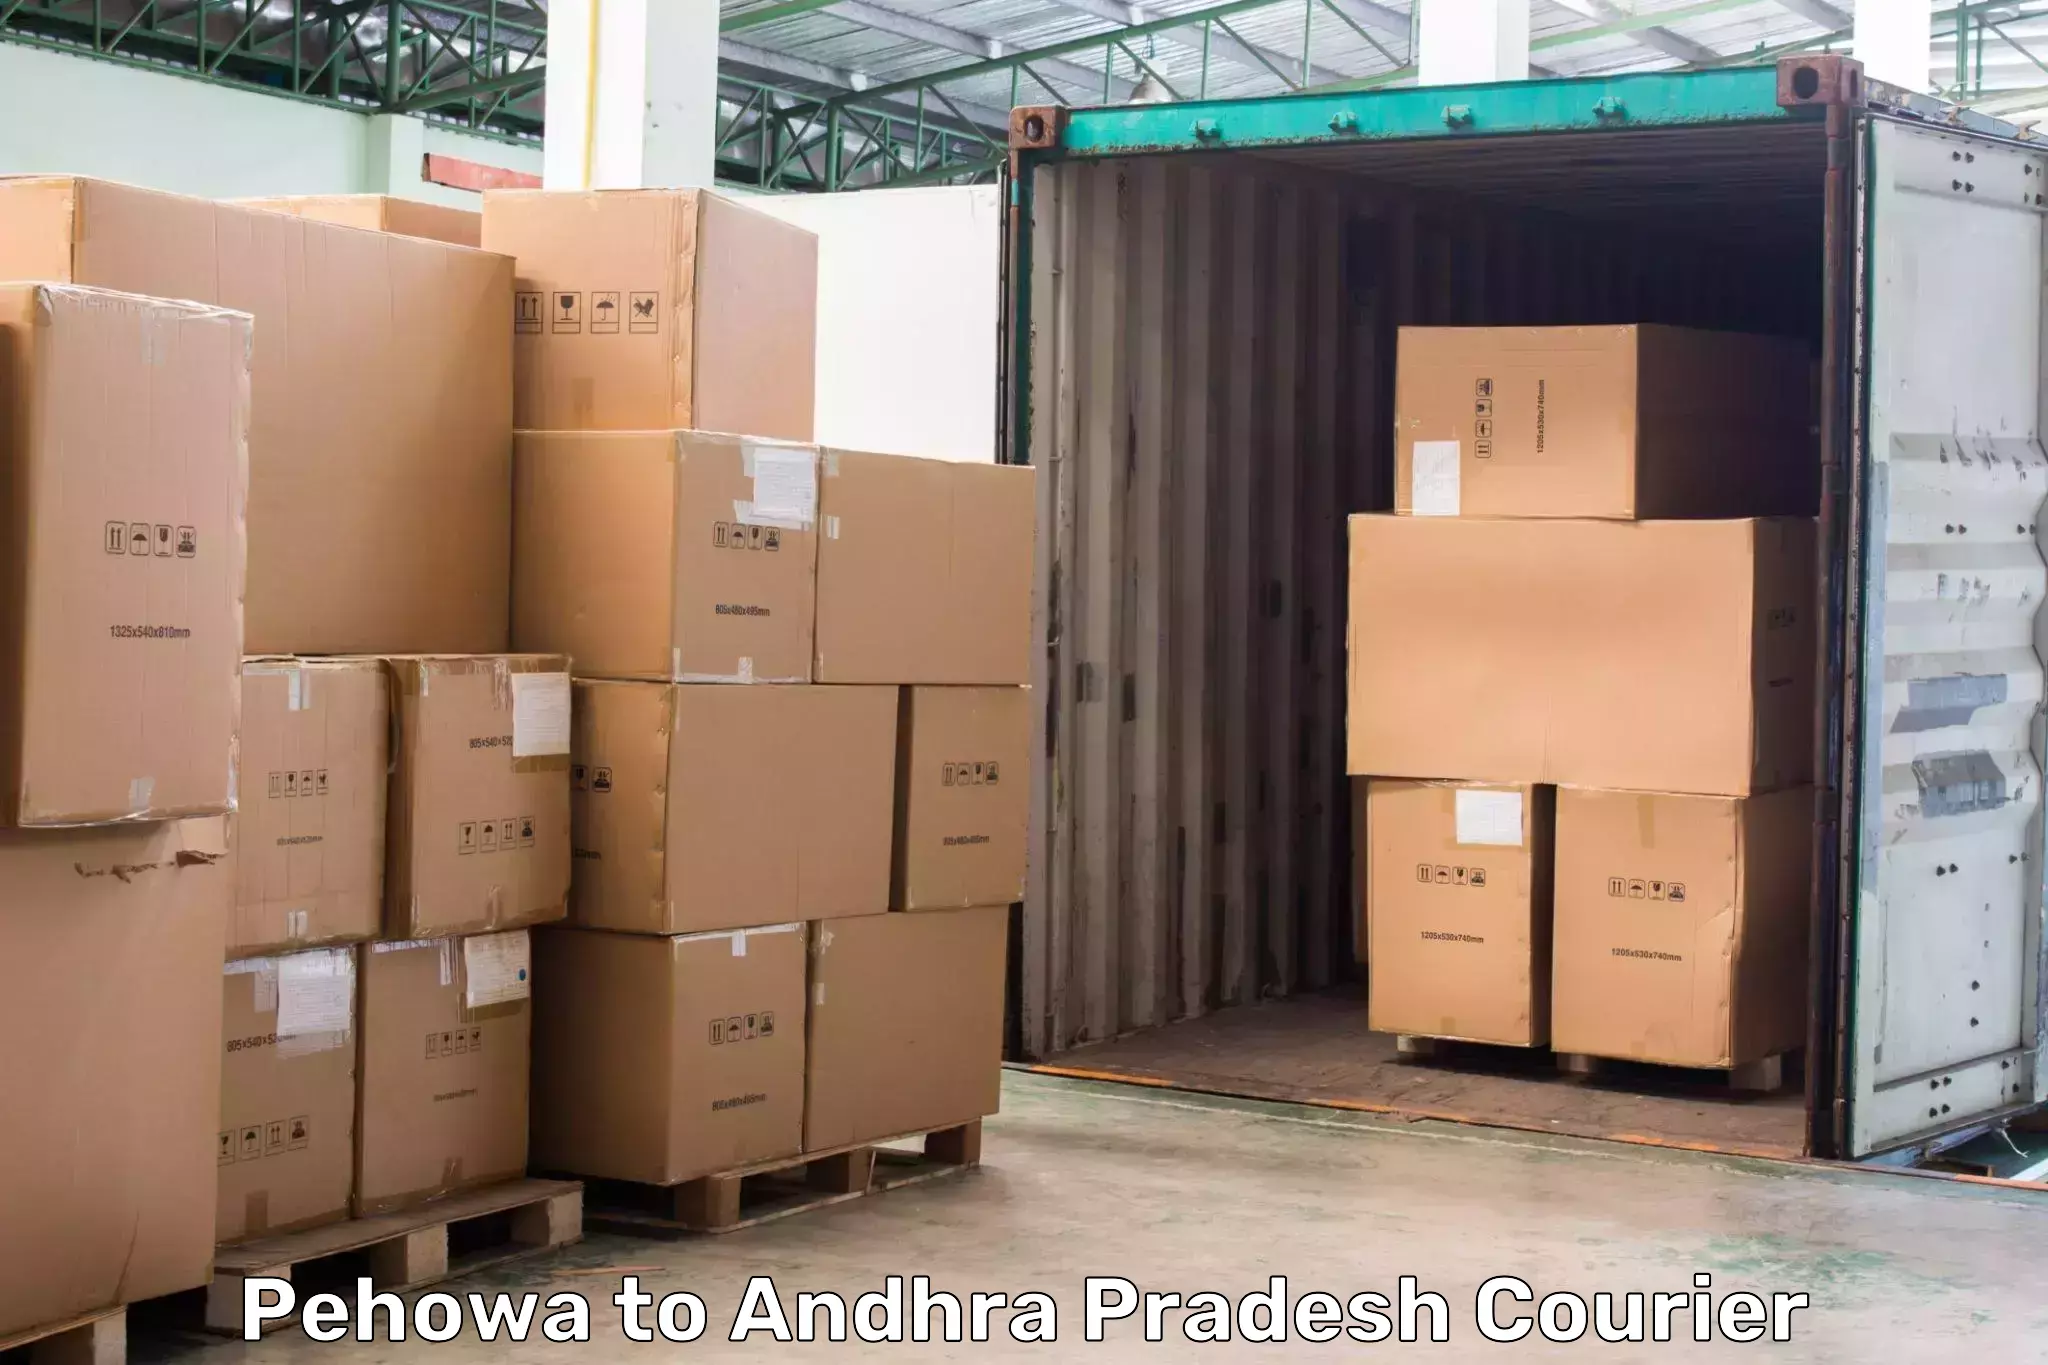 High-performance logistics in Pehowa to Yerravaram